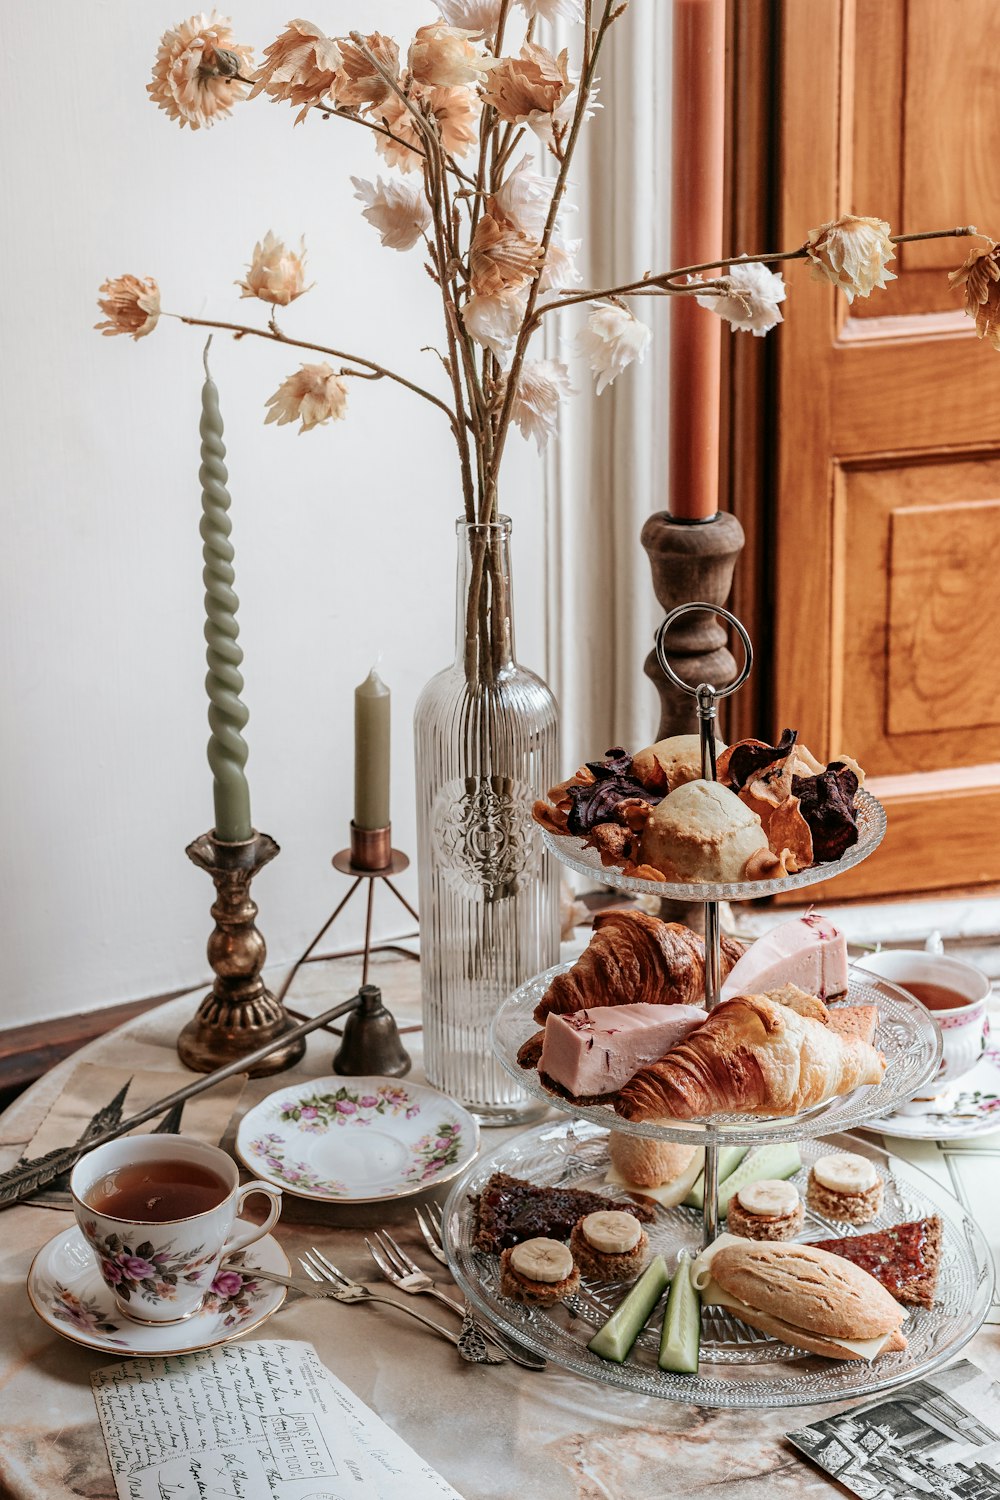 食べ物の皿と花でいっぱいの花瓶で覆われたテーブル